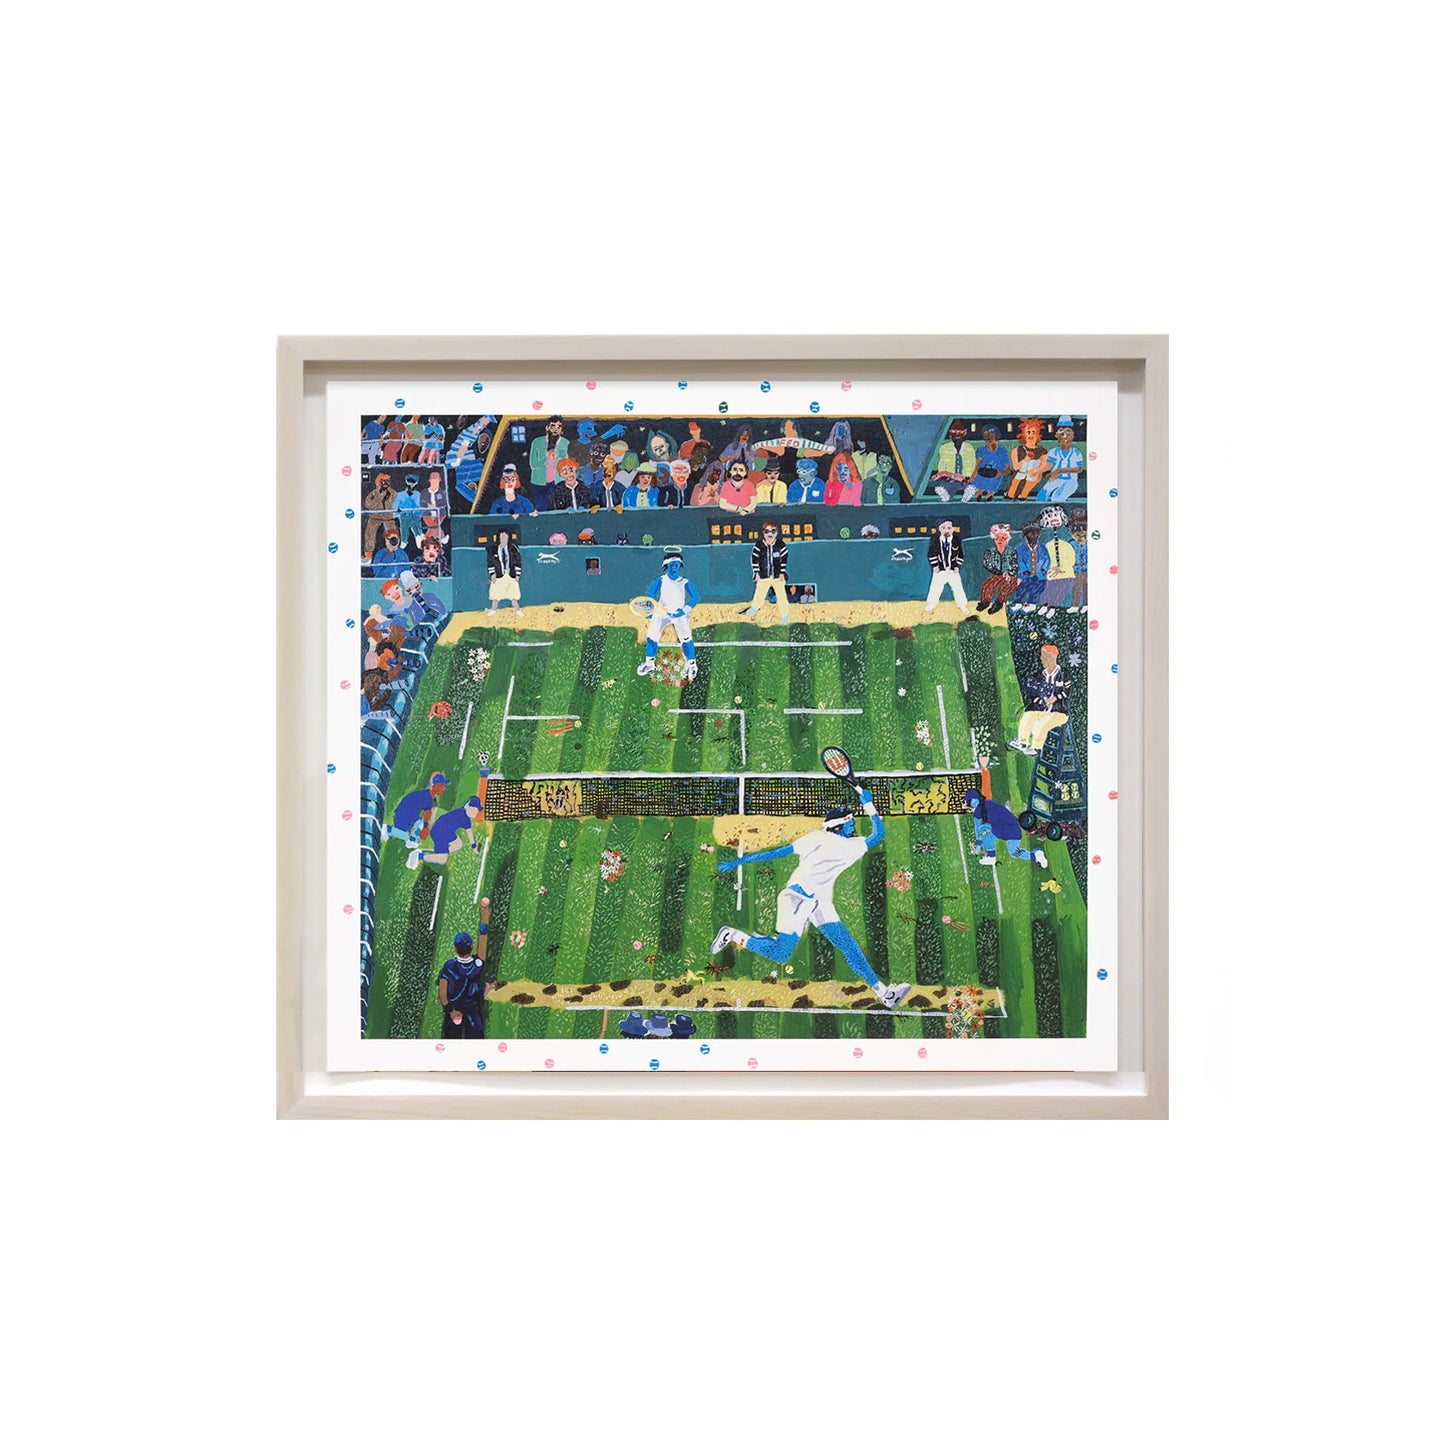 Shaun Ellison, Nadal vs. Federer, Wimbledon 2008, Hand-embellished, Signed and Numbered Limited Edition Print